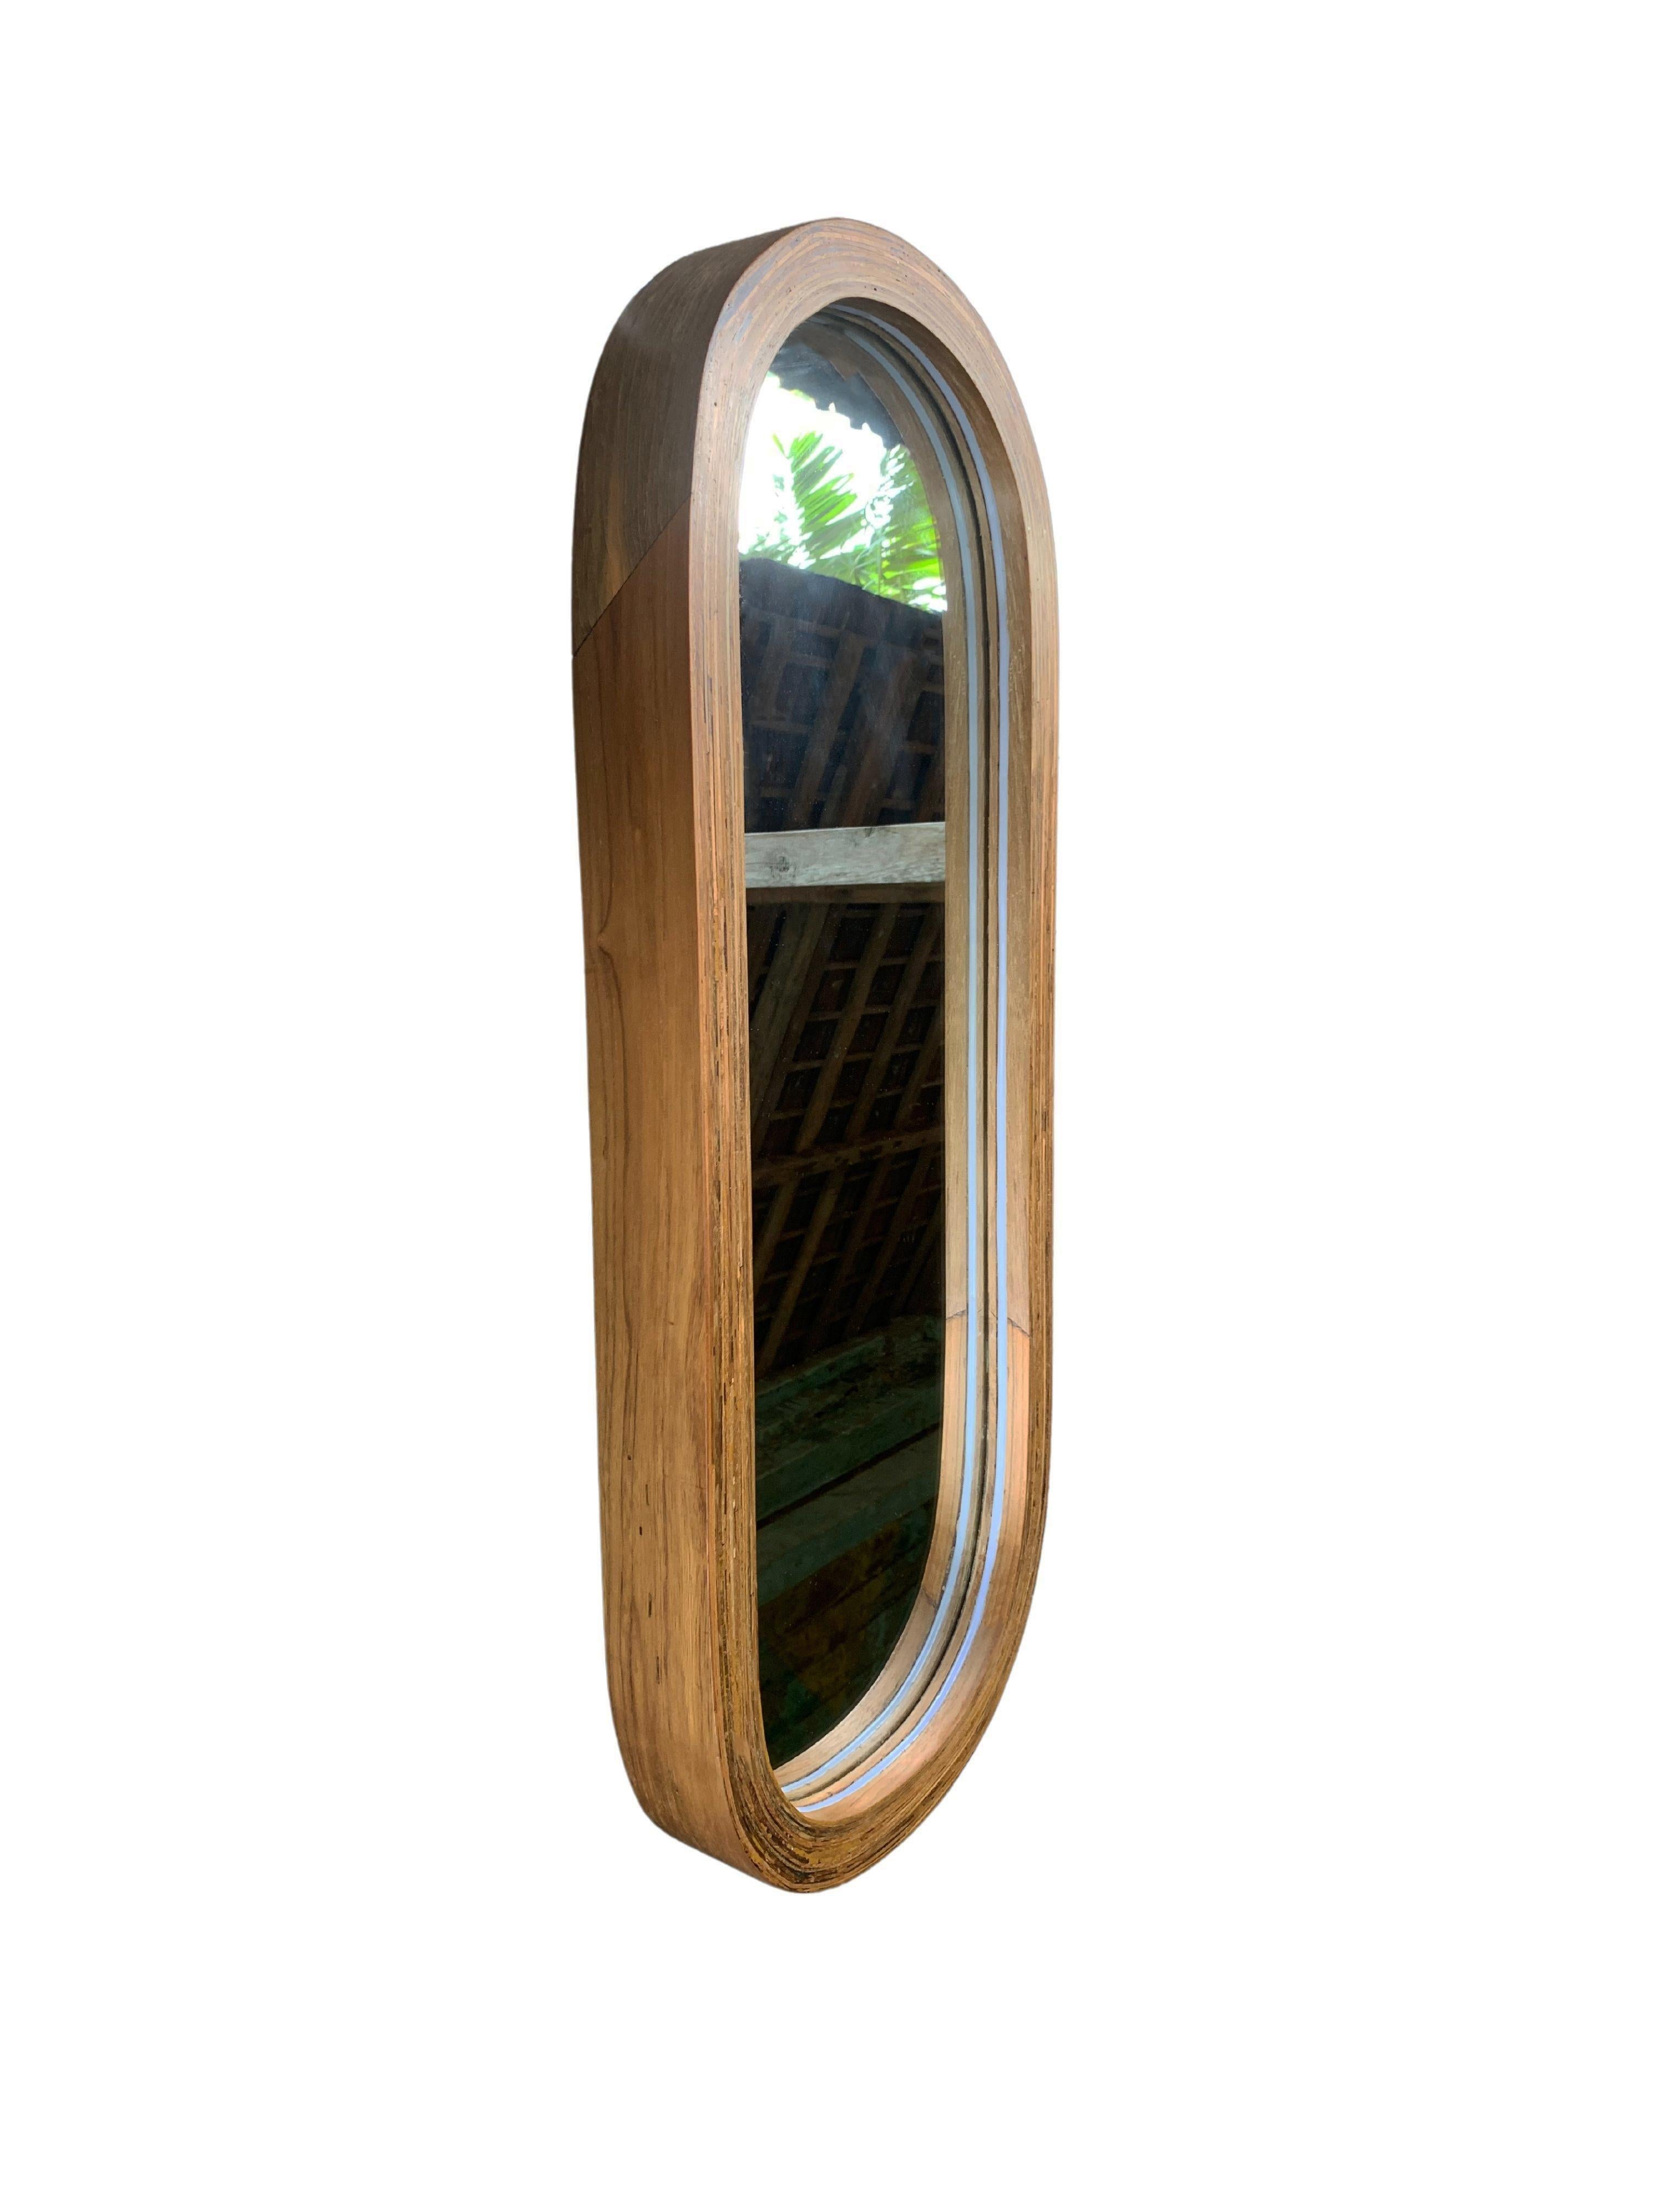 Dieser Spiegel zeichnet sich durch einen atemberaubenden Rahmen aus aufgearbeitetem Teakholz und eine polierte Oberfläche aus. Das Holz stammt aus alten Kolonialhäusern in Indonesien. Die Holzmaserung trägt zu seinem Charme bei. Er verfügt über